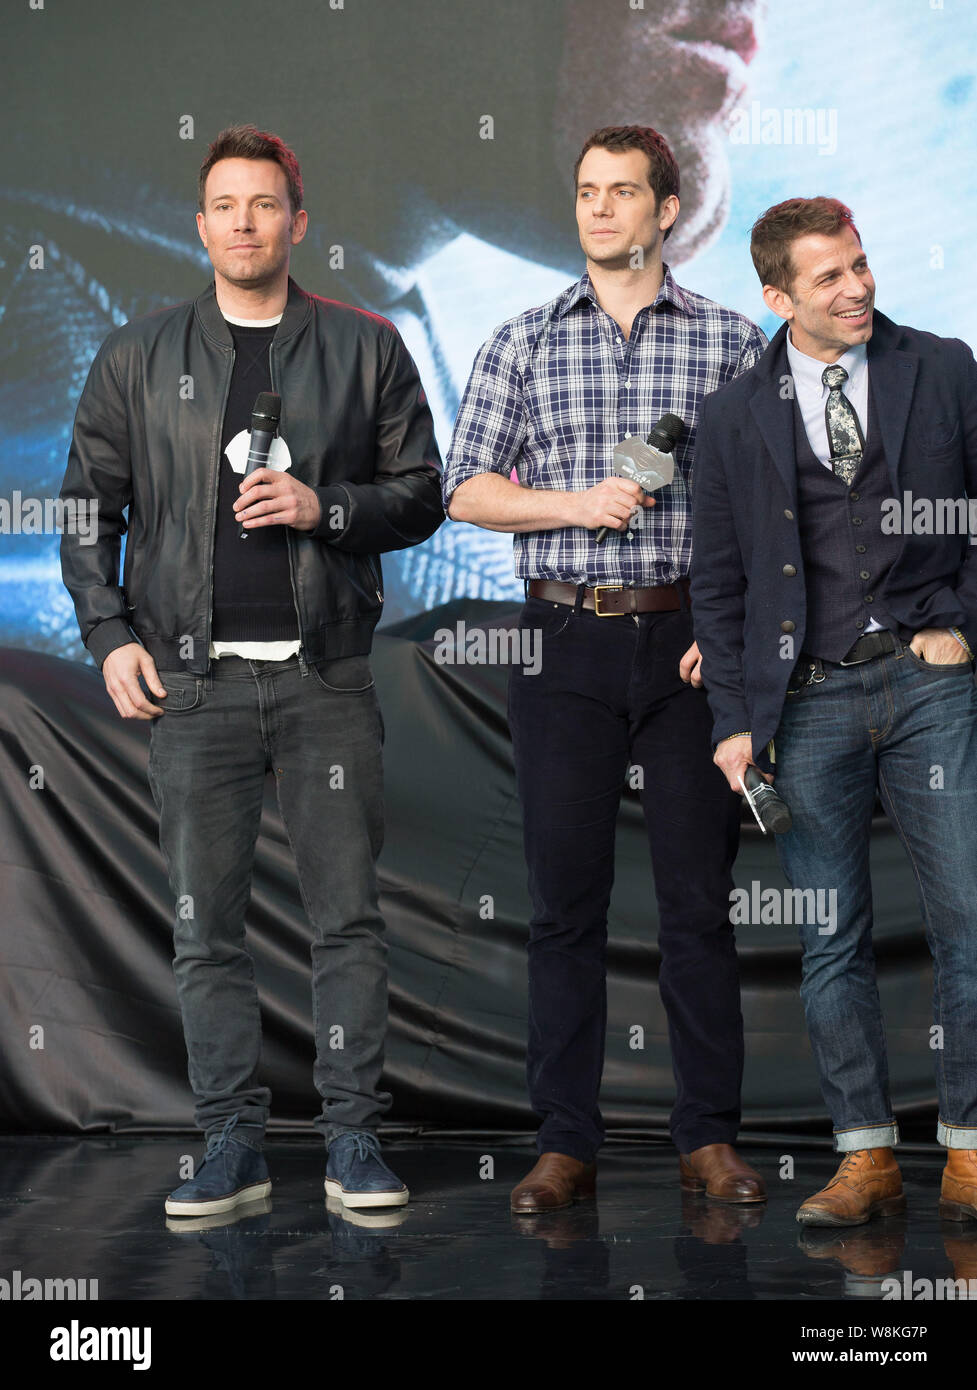 (Desde la izquierda) el actor norteamericano Ben Affleck, el actor británico Henry Cavill y director estadounidense Zack Snyder asistir a un estreno de su nueva película "Batman v S Foto de stock